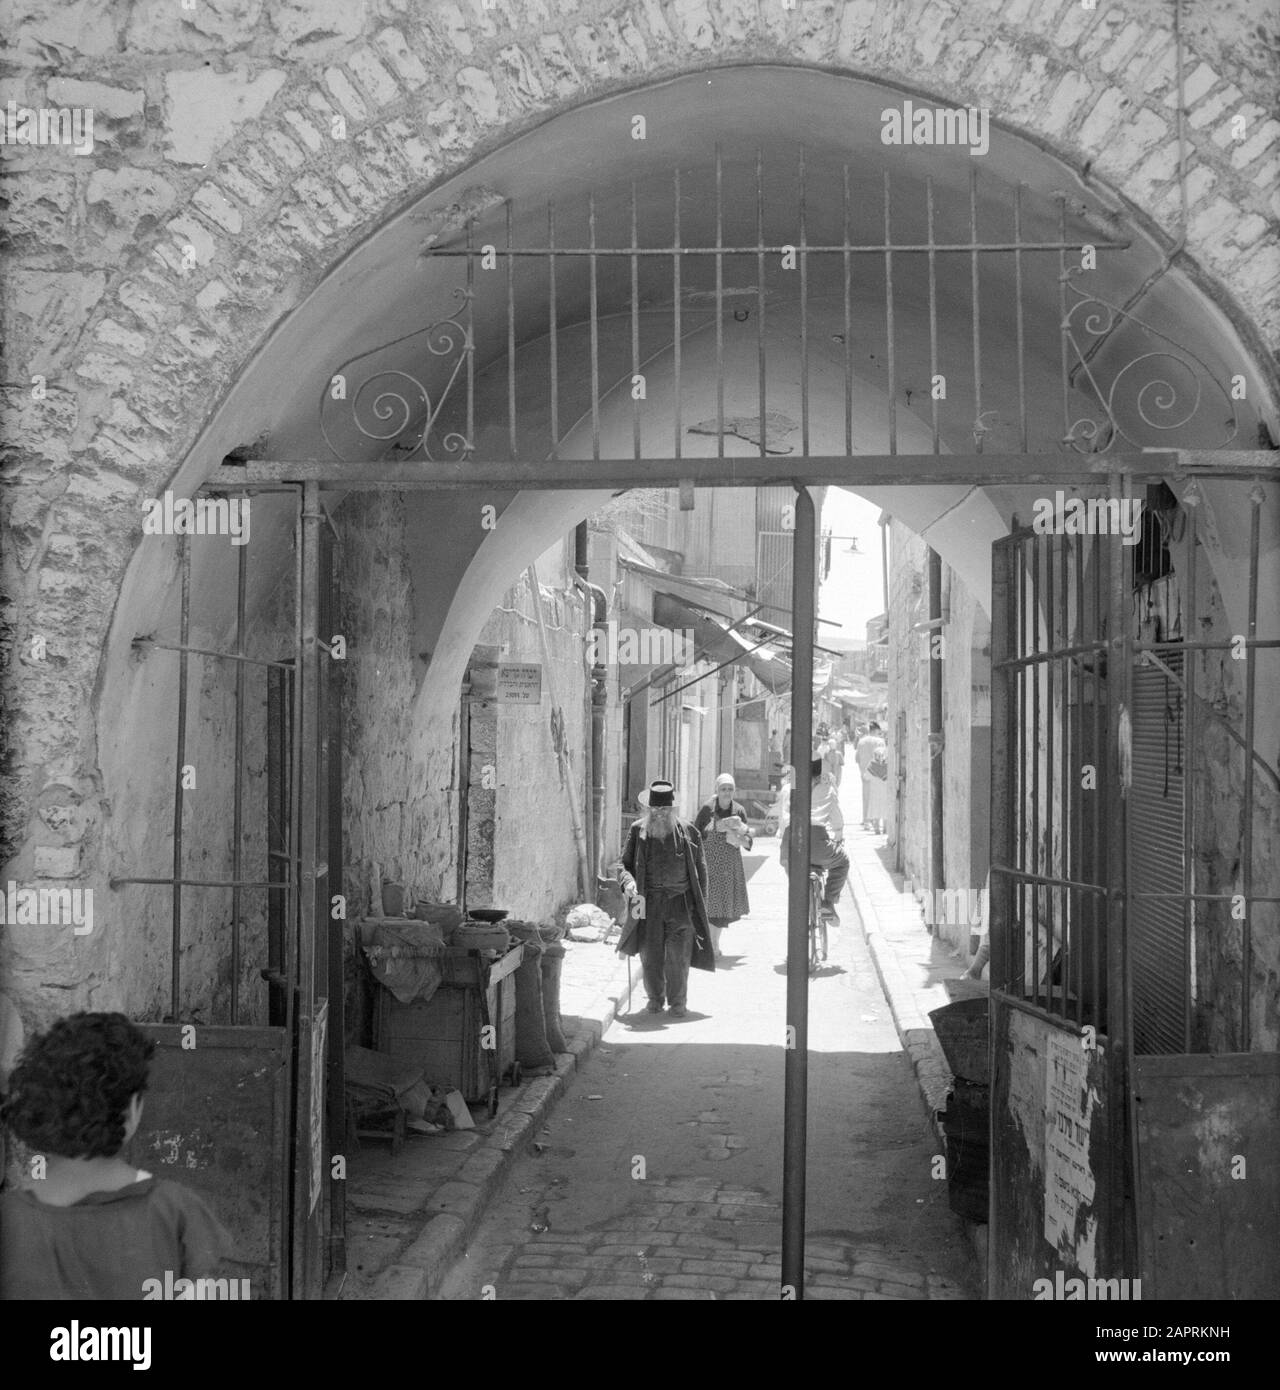 Israele 1964-1965: Gerusalemme (Gerusalemme), Mea Shearim Gateway attraverso la porta con attività quotidiana Annotazione: MEA Shearim, chiamato anche Meah Shearim o un centinaio di porte, è uno dei quartieri più antichi di Gerusalemme. Fu costruito a partire dal 1870 da ebrei asiatici che vivevano nella Città Vecchia fino ad allora. Tuttavia, c'era troppo poco spazio e così comprarono un pezzo di terra a nord-ovest della città. Questa terra, un'area paludata, fu coltivata in terra per costruire un nuovo quartiere: Meah Shearim. Il distretto è noto anno 2012 come il quartiere ebraico ortodosso più estremo del mondo ed è sede di diversi Hasi Foto Stock